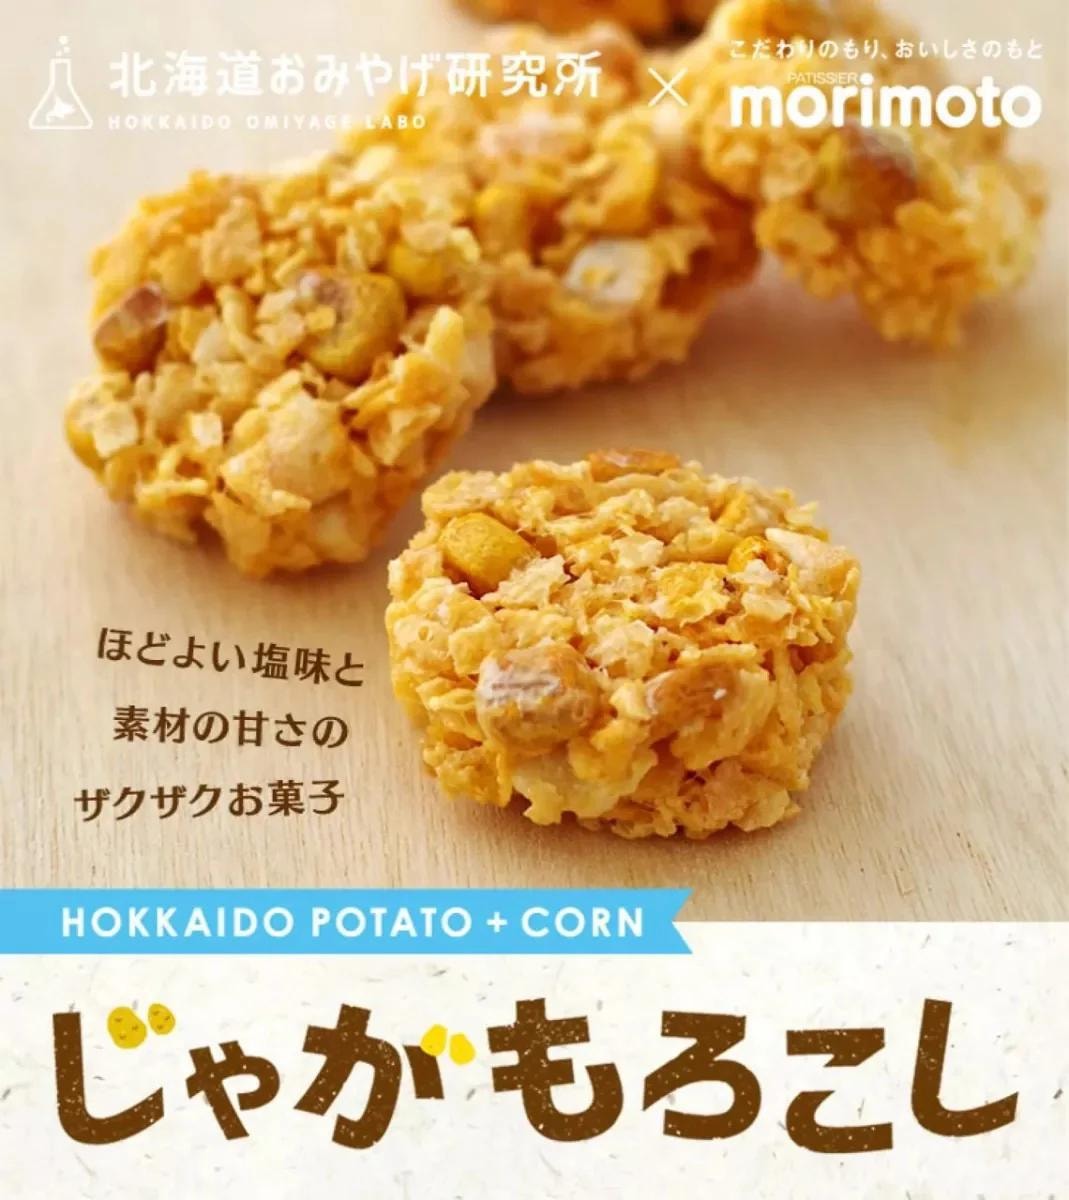 【日本北海道直效郵件】北海道土產研究所×morimoto 玉米馬鈴薯餅 8個入